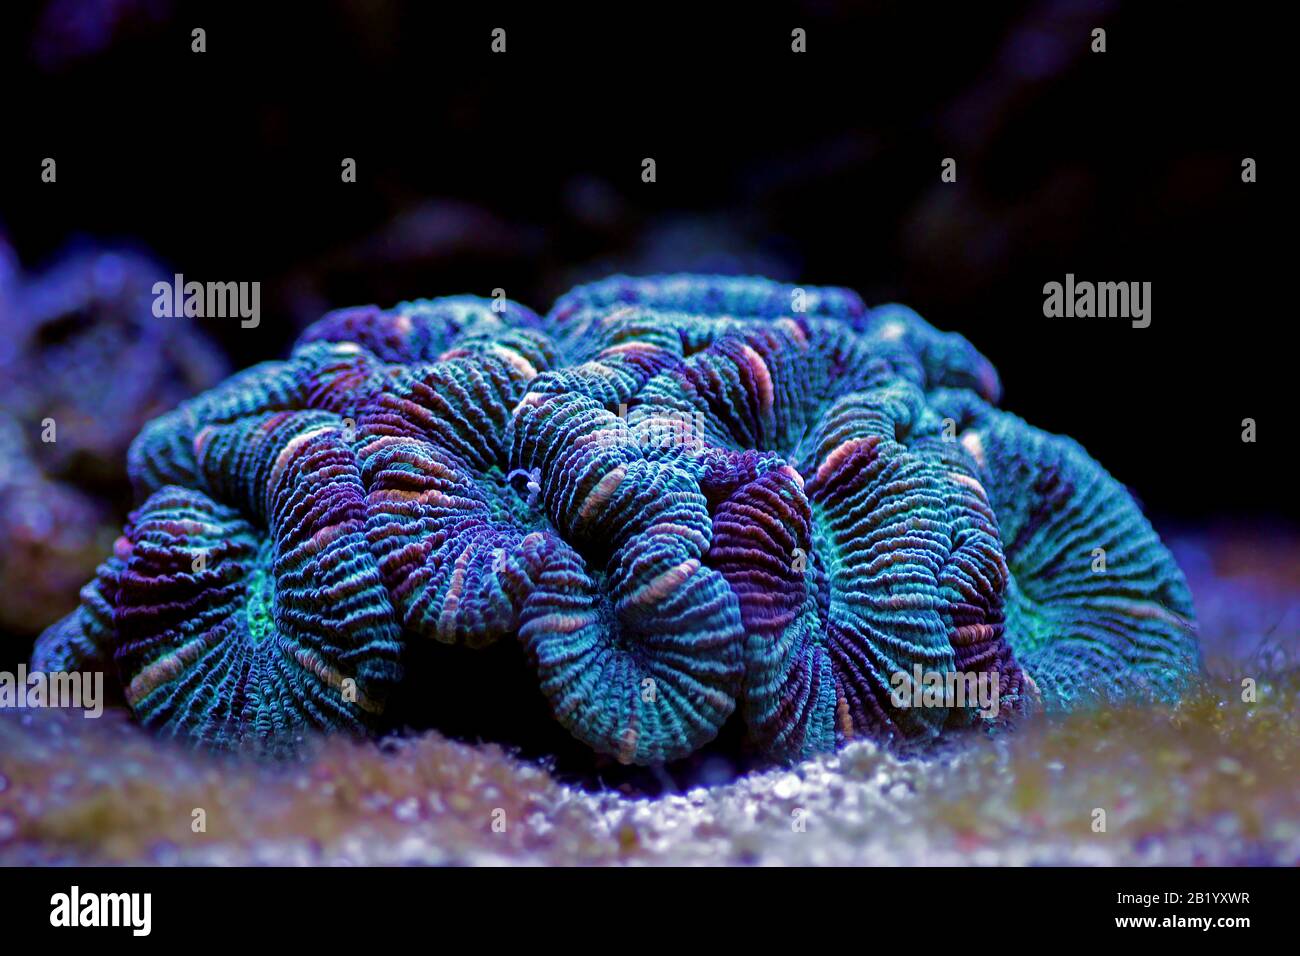 Wellsophyllia plegado cerebro abierto coral LPS Foto de stock